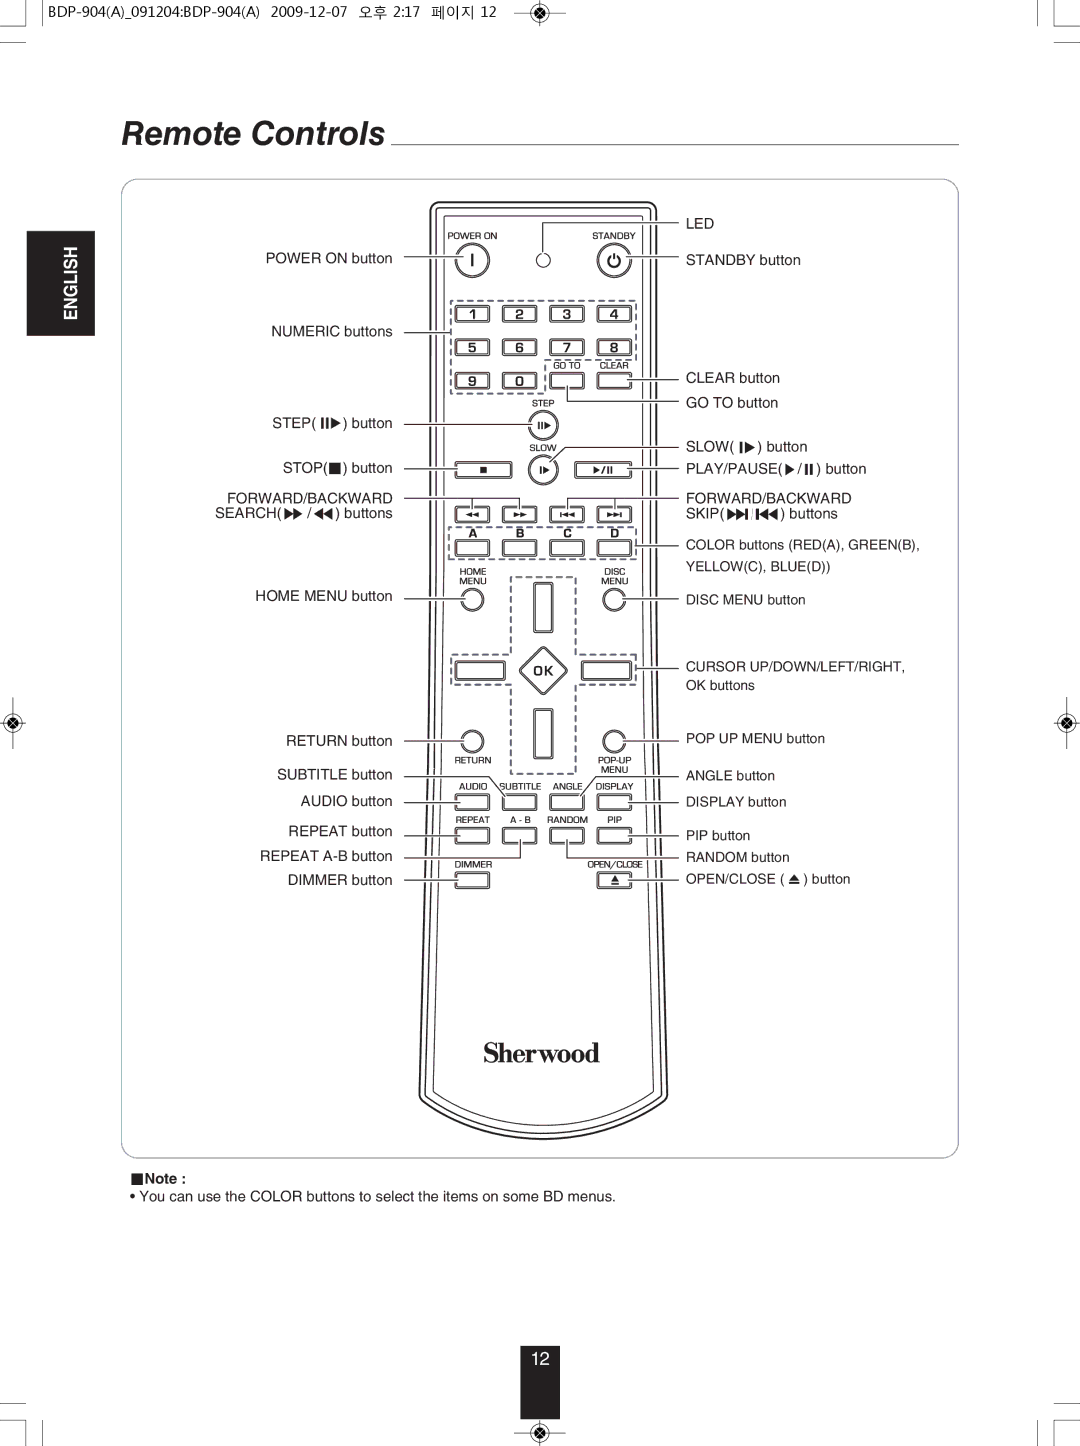 Sherwood BDP-904 manual Remote Controls, Step, Forward/Backward, Led 